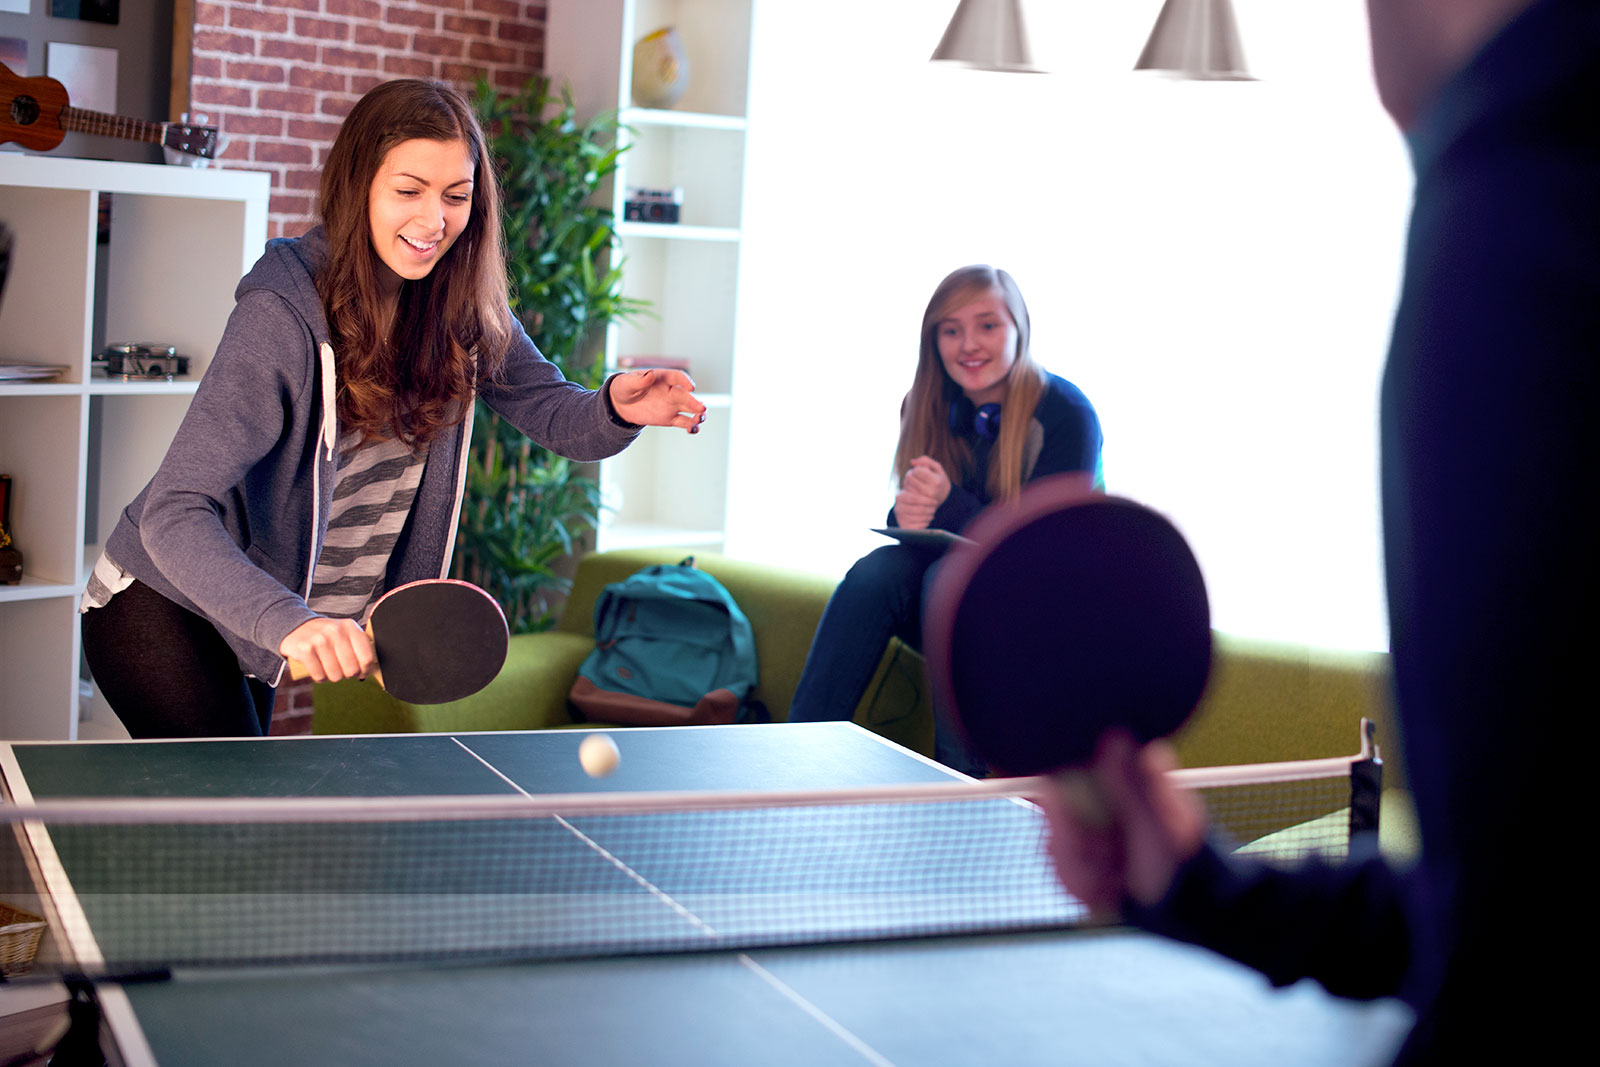 Jugendliche spielen Tischtennis in einer Jugendeinrichtung